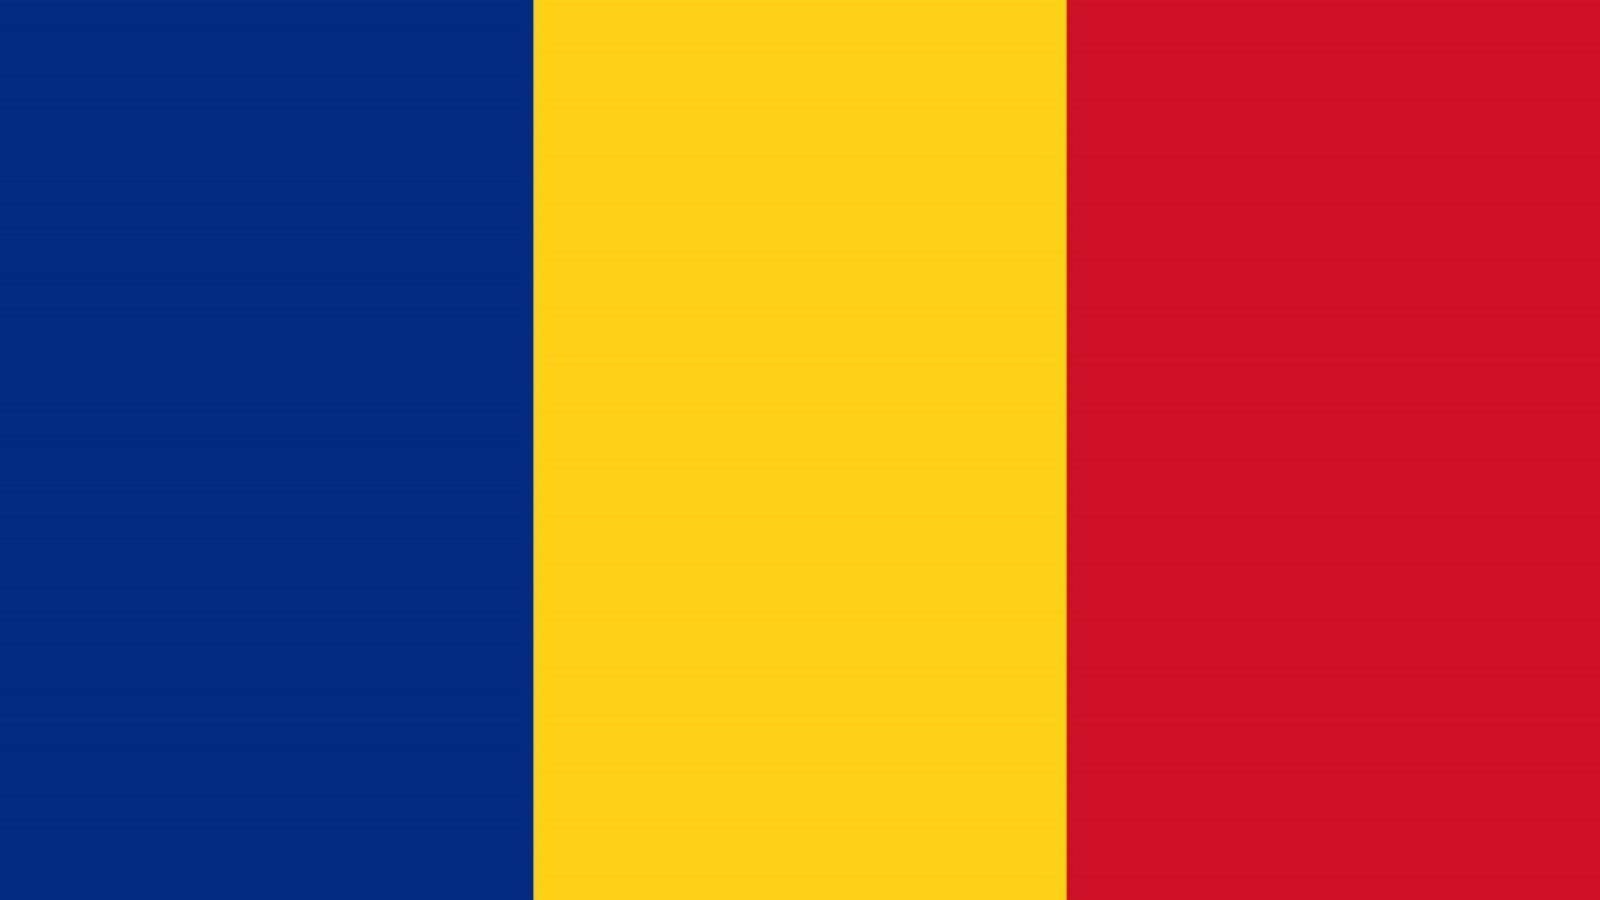 Rząd Rumunii 1 sierpnia Możliwa data zrzeczenia się maski